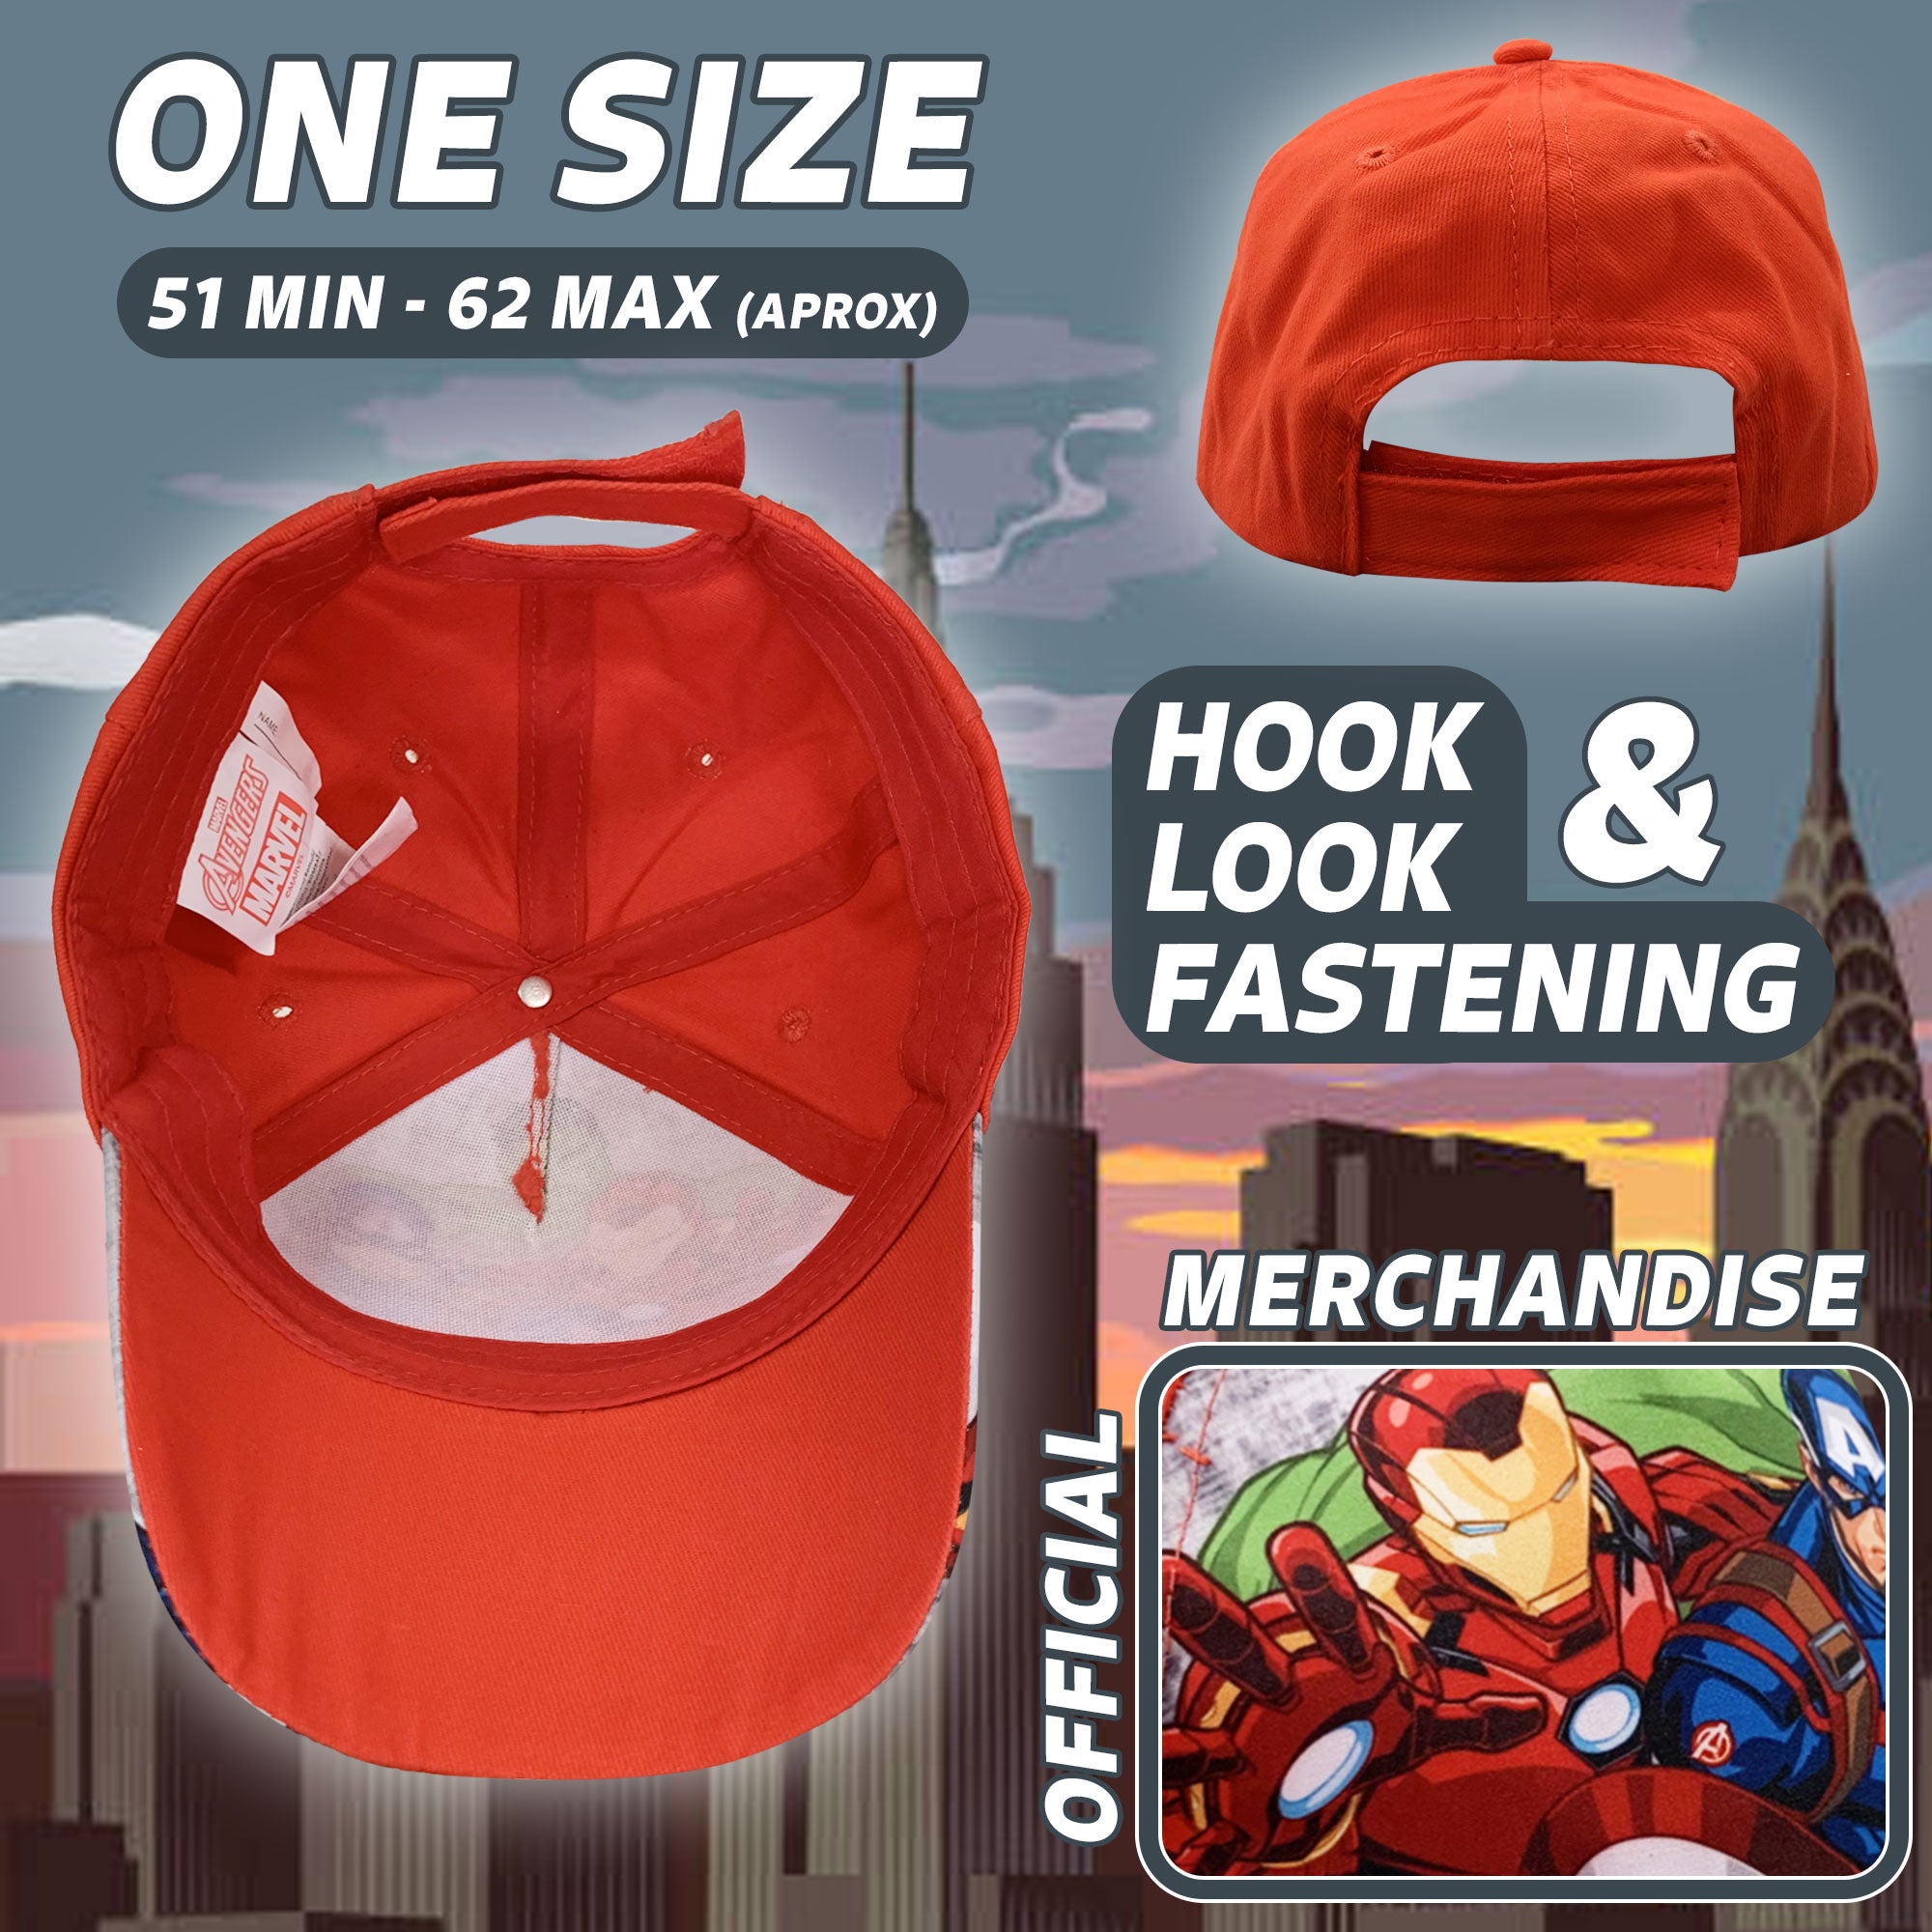 Cappellino per bambino ufficiale Marvel Avengers berretto con visiera 6170